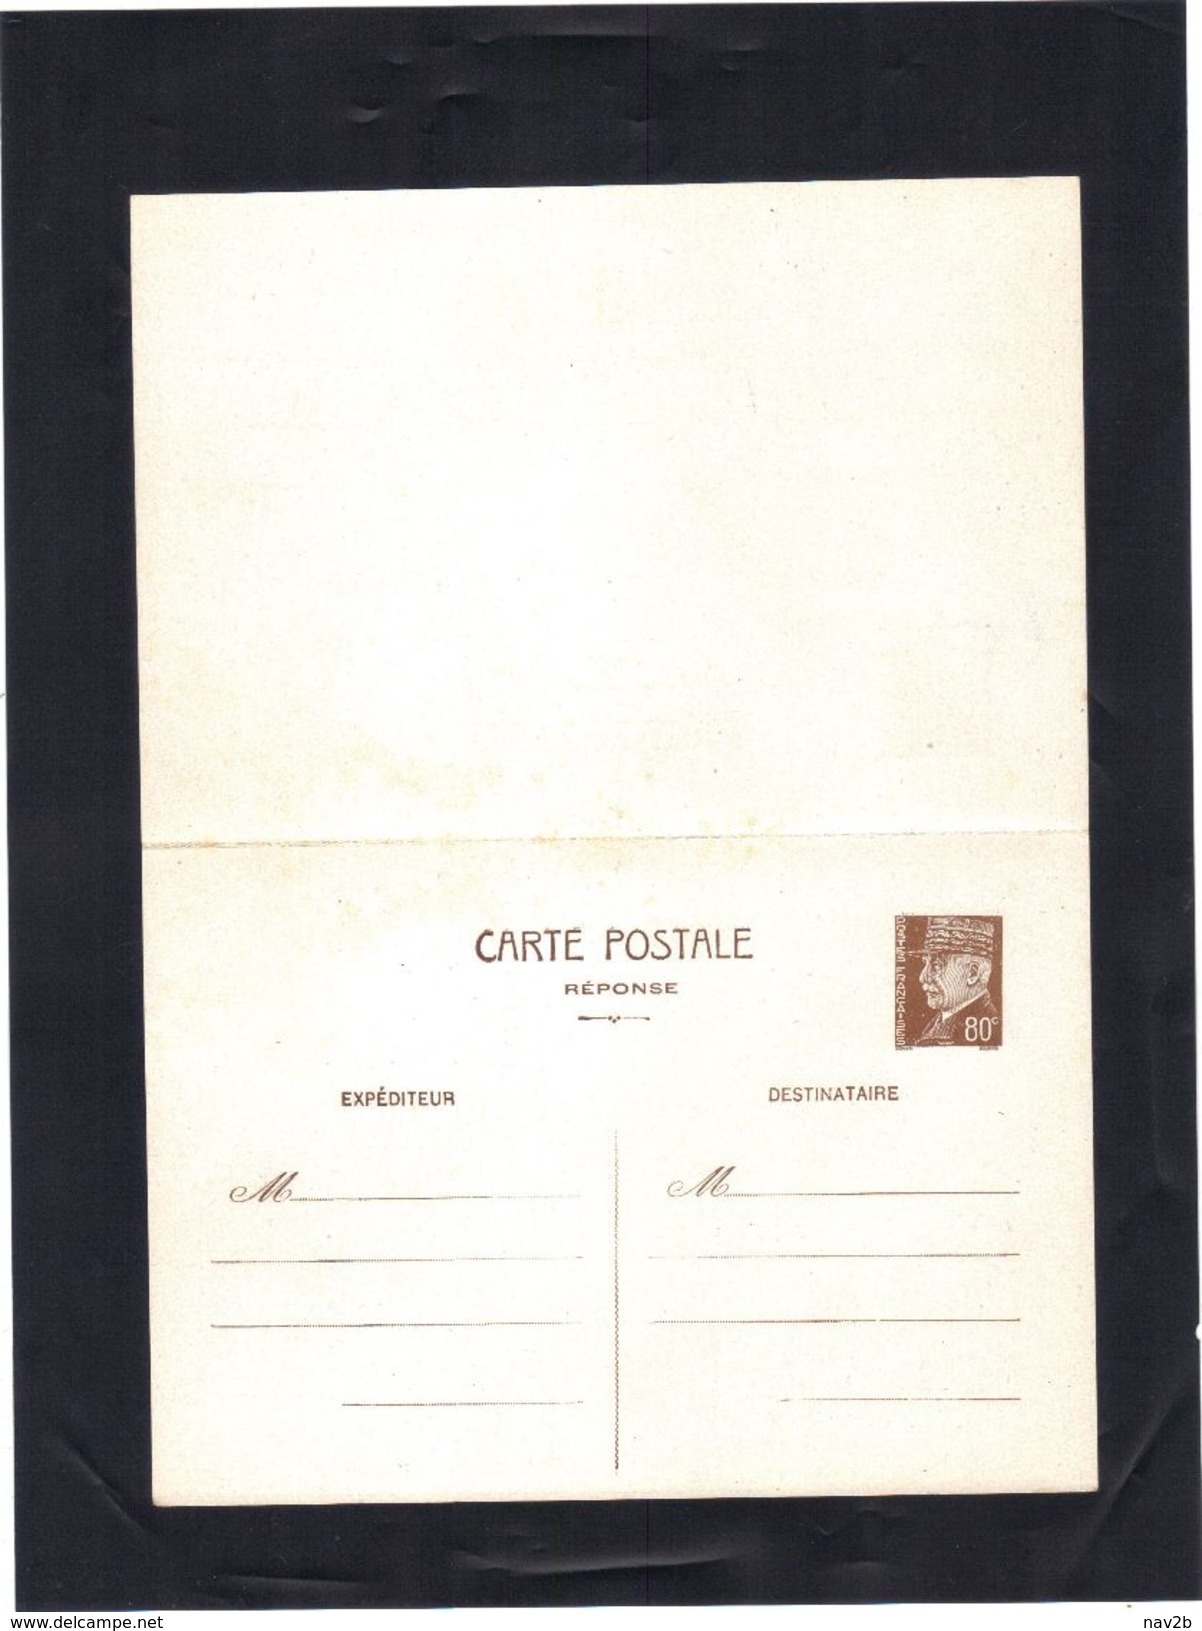 Entier Carte Postale Pétain 80 Cts .  REPONSE  PAYEE .  Neuve . - Cartoline Postali E Su Commissione Privata TSC (ante 1995)